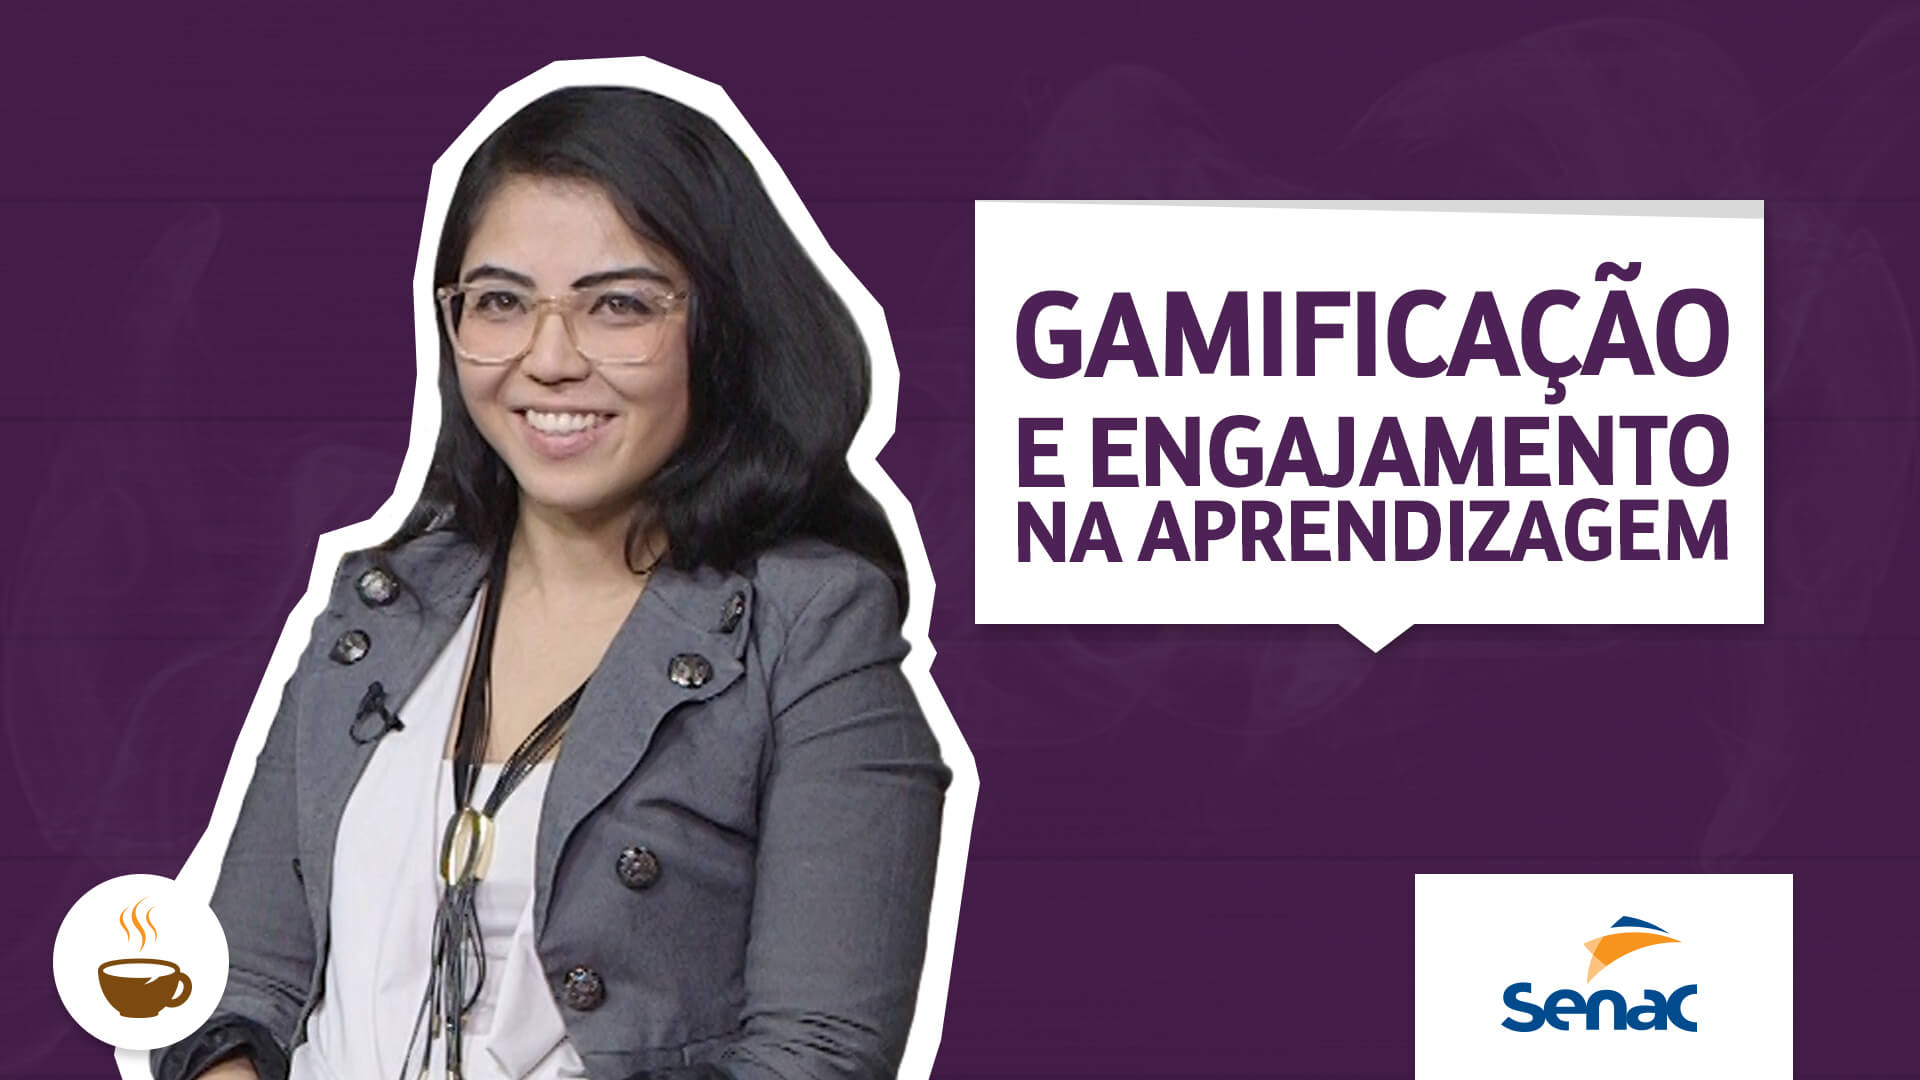 Angélica Kanô, do SENAC São Paulo, fala sobre Gamificação e engajamento na aprendizagem